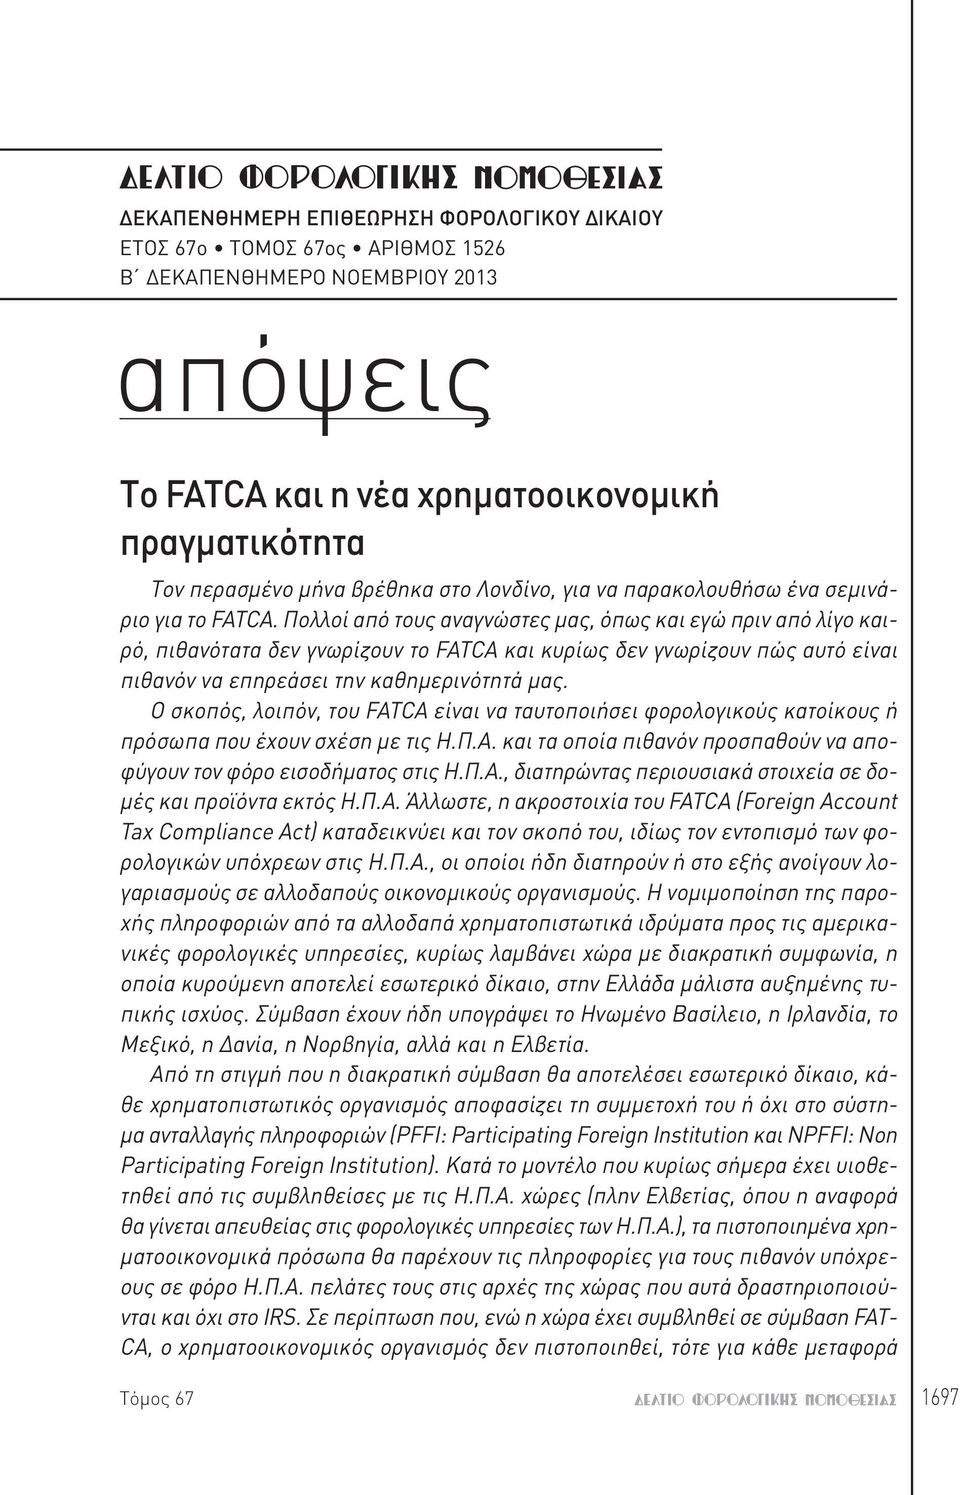 Πολλοί από τους αναγνώστες μας, όπως και εγώ πριν από λίγο καιρό, πιθανότατα δεν γνωρίζουν το FATCA και κυρίως δεν γνωρίζουν πώς αυτό είναι πιθανόν να επηρεάσει την καθημερινότητά μας.